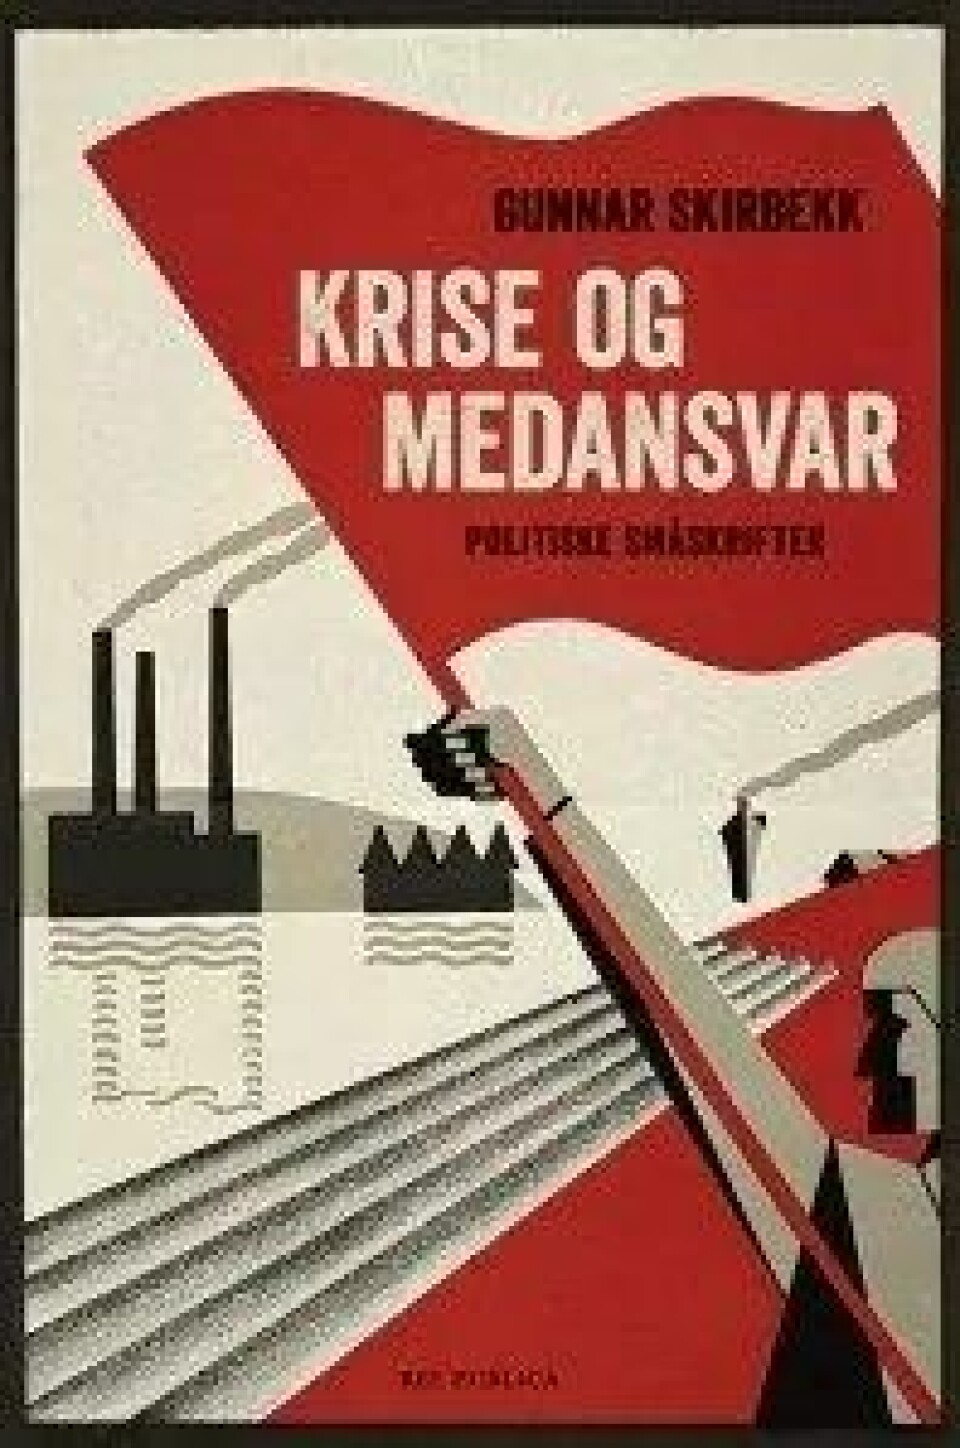 Krise og medansvar – Politiske småskrifter av Gunnar Skirbekk, Res publica, 2016.